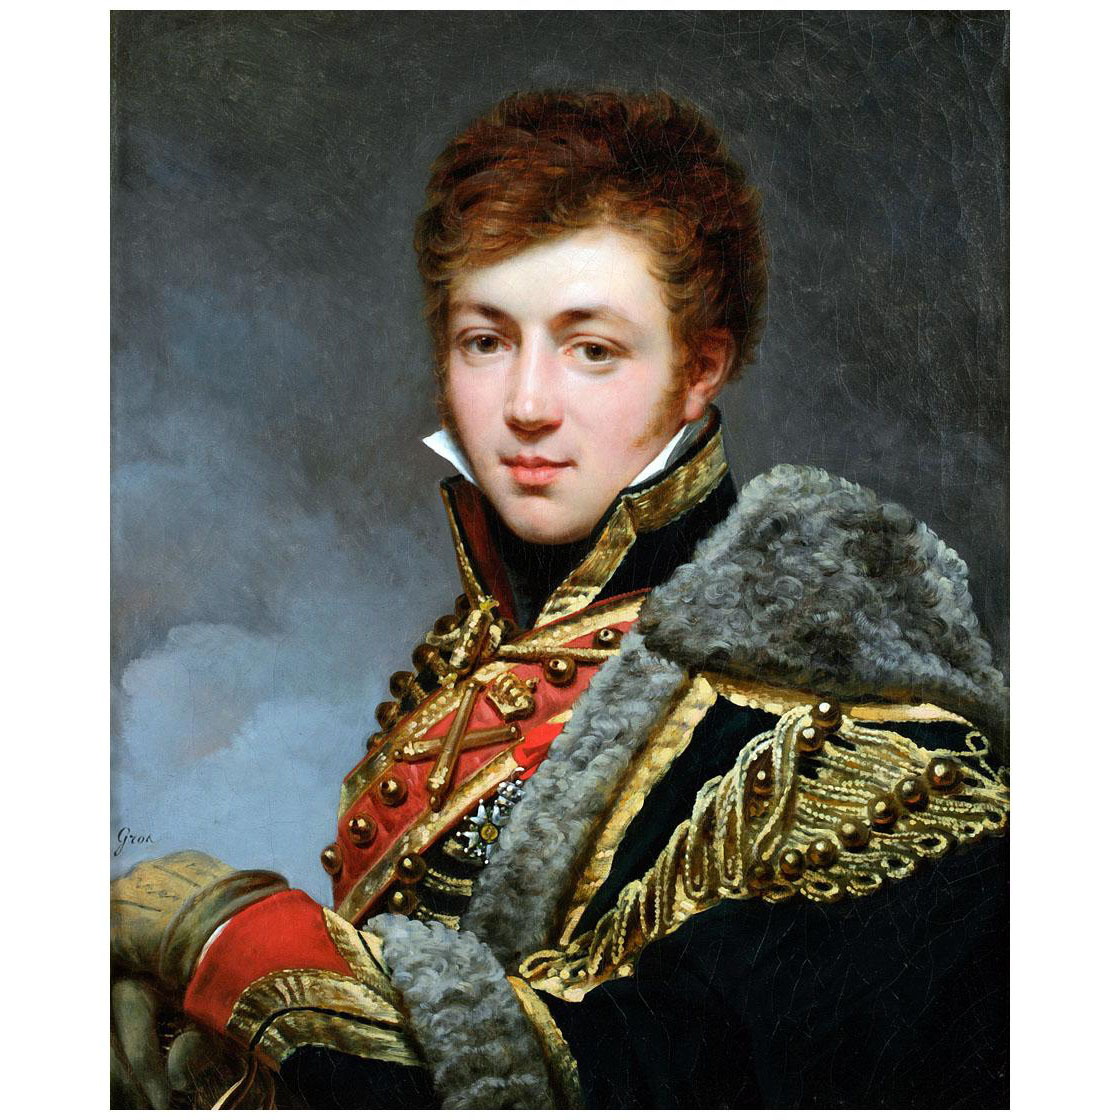 Antoine-Jean Gros. Portrait de comte de La Riboisiere. 1815. Private collection